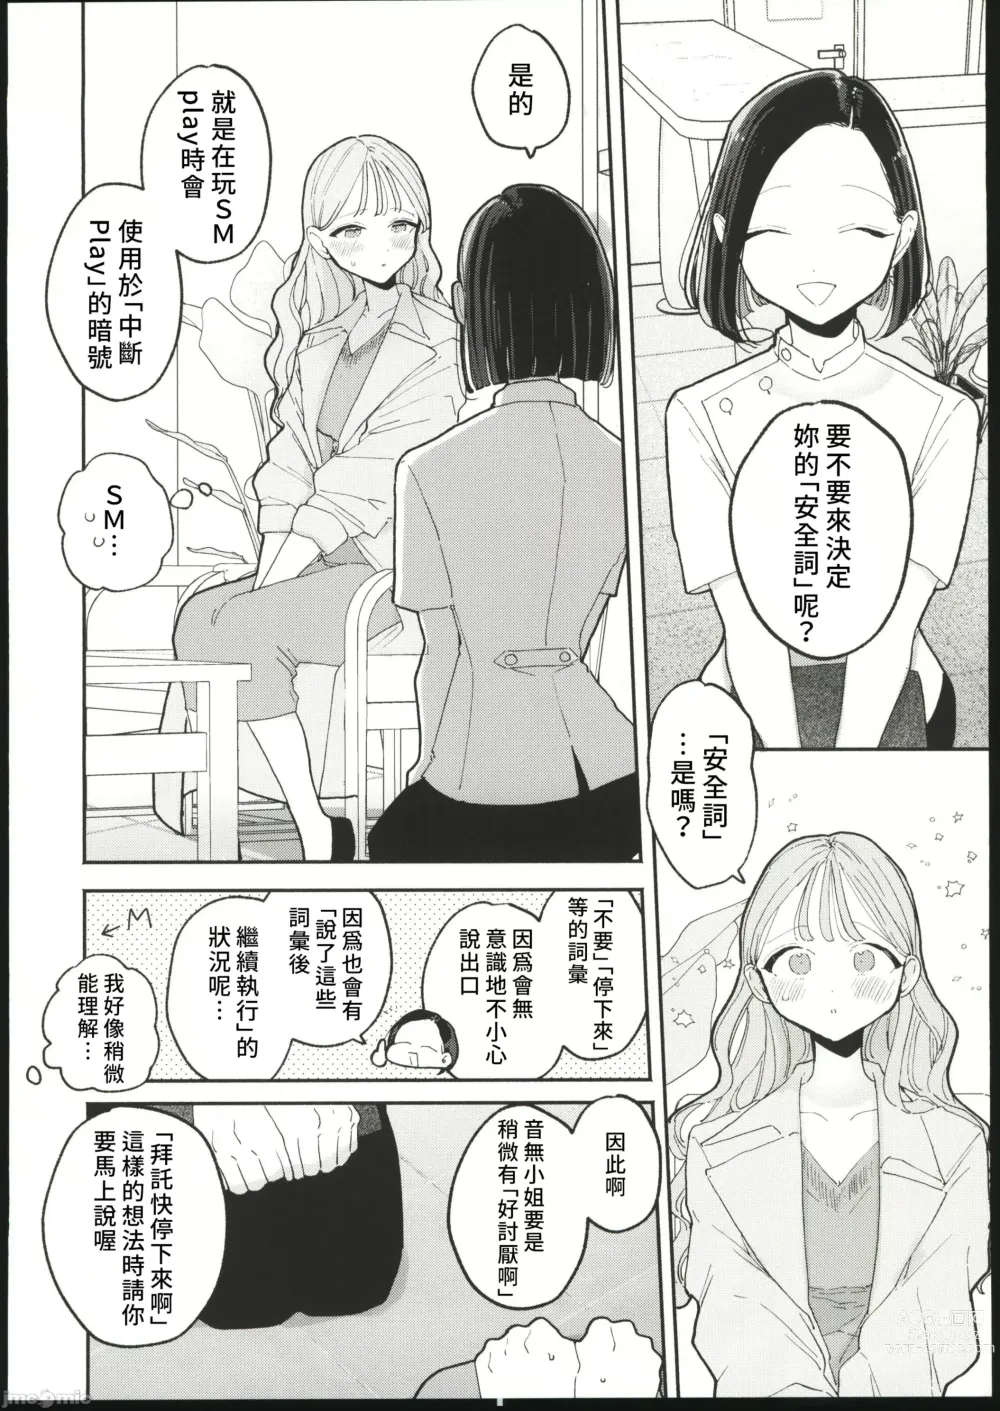 Page 7 of manga 絶頂リフレ 駅前の性感マッサージ店で○○になっちゃう女の子の話